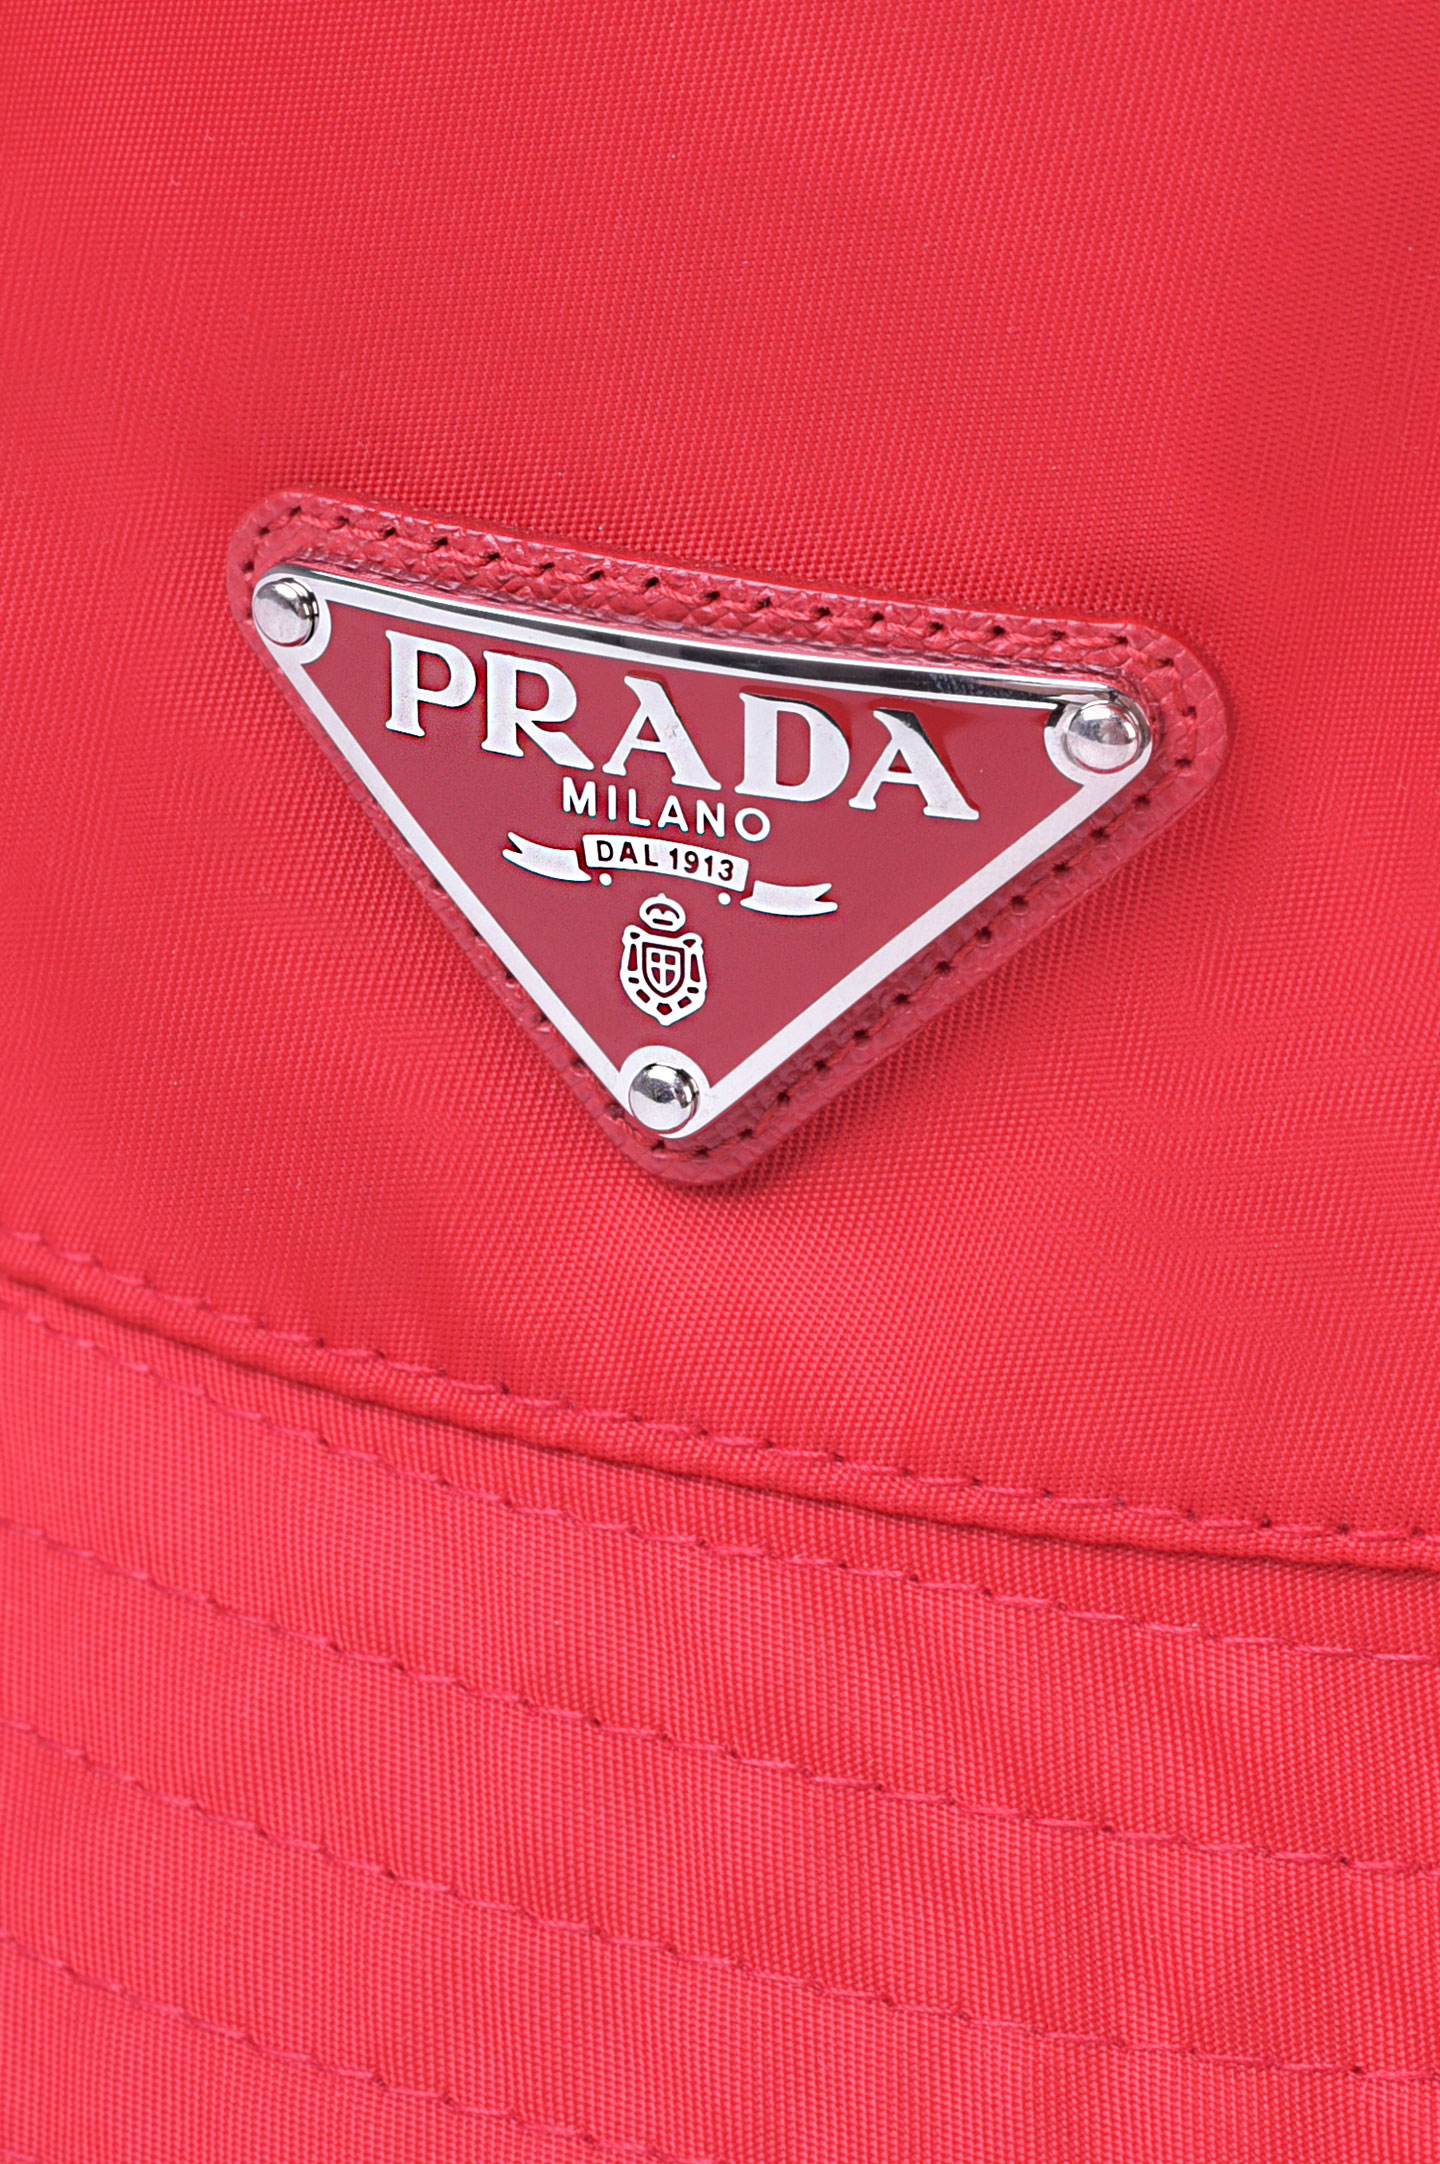 Панама PRADA 2HC137 2B15, цвет: Красный, Мужской